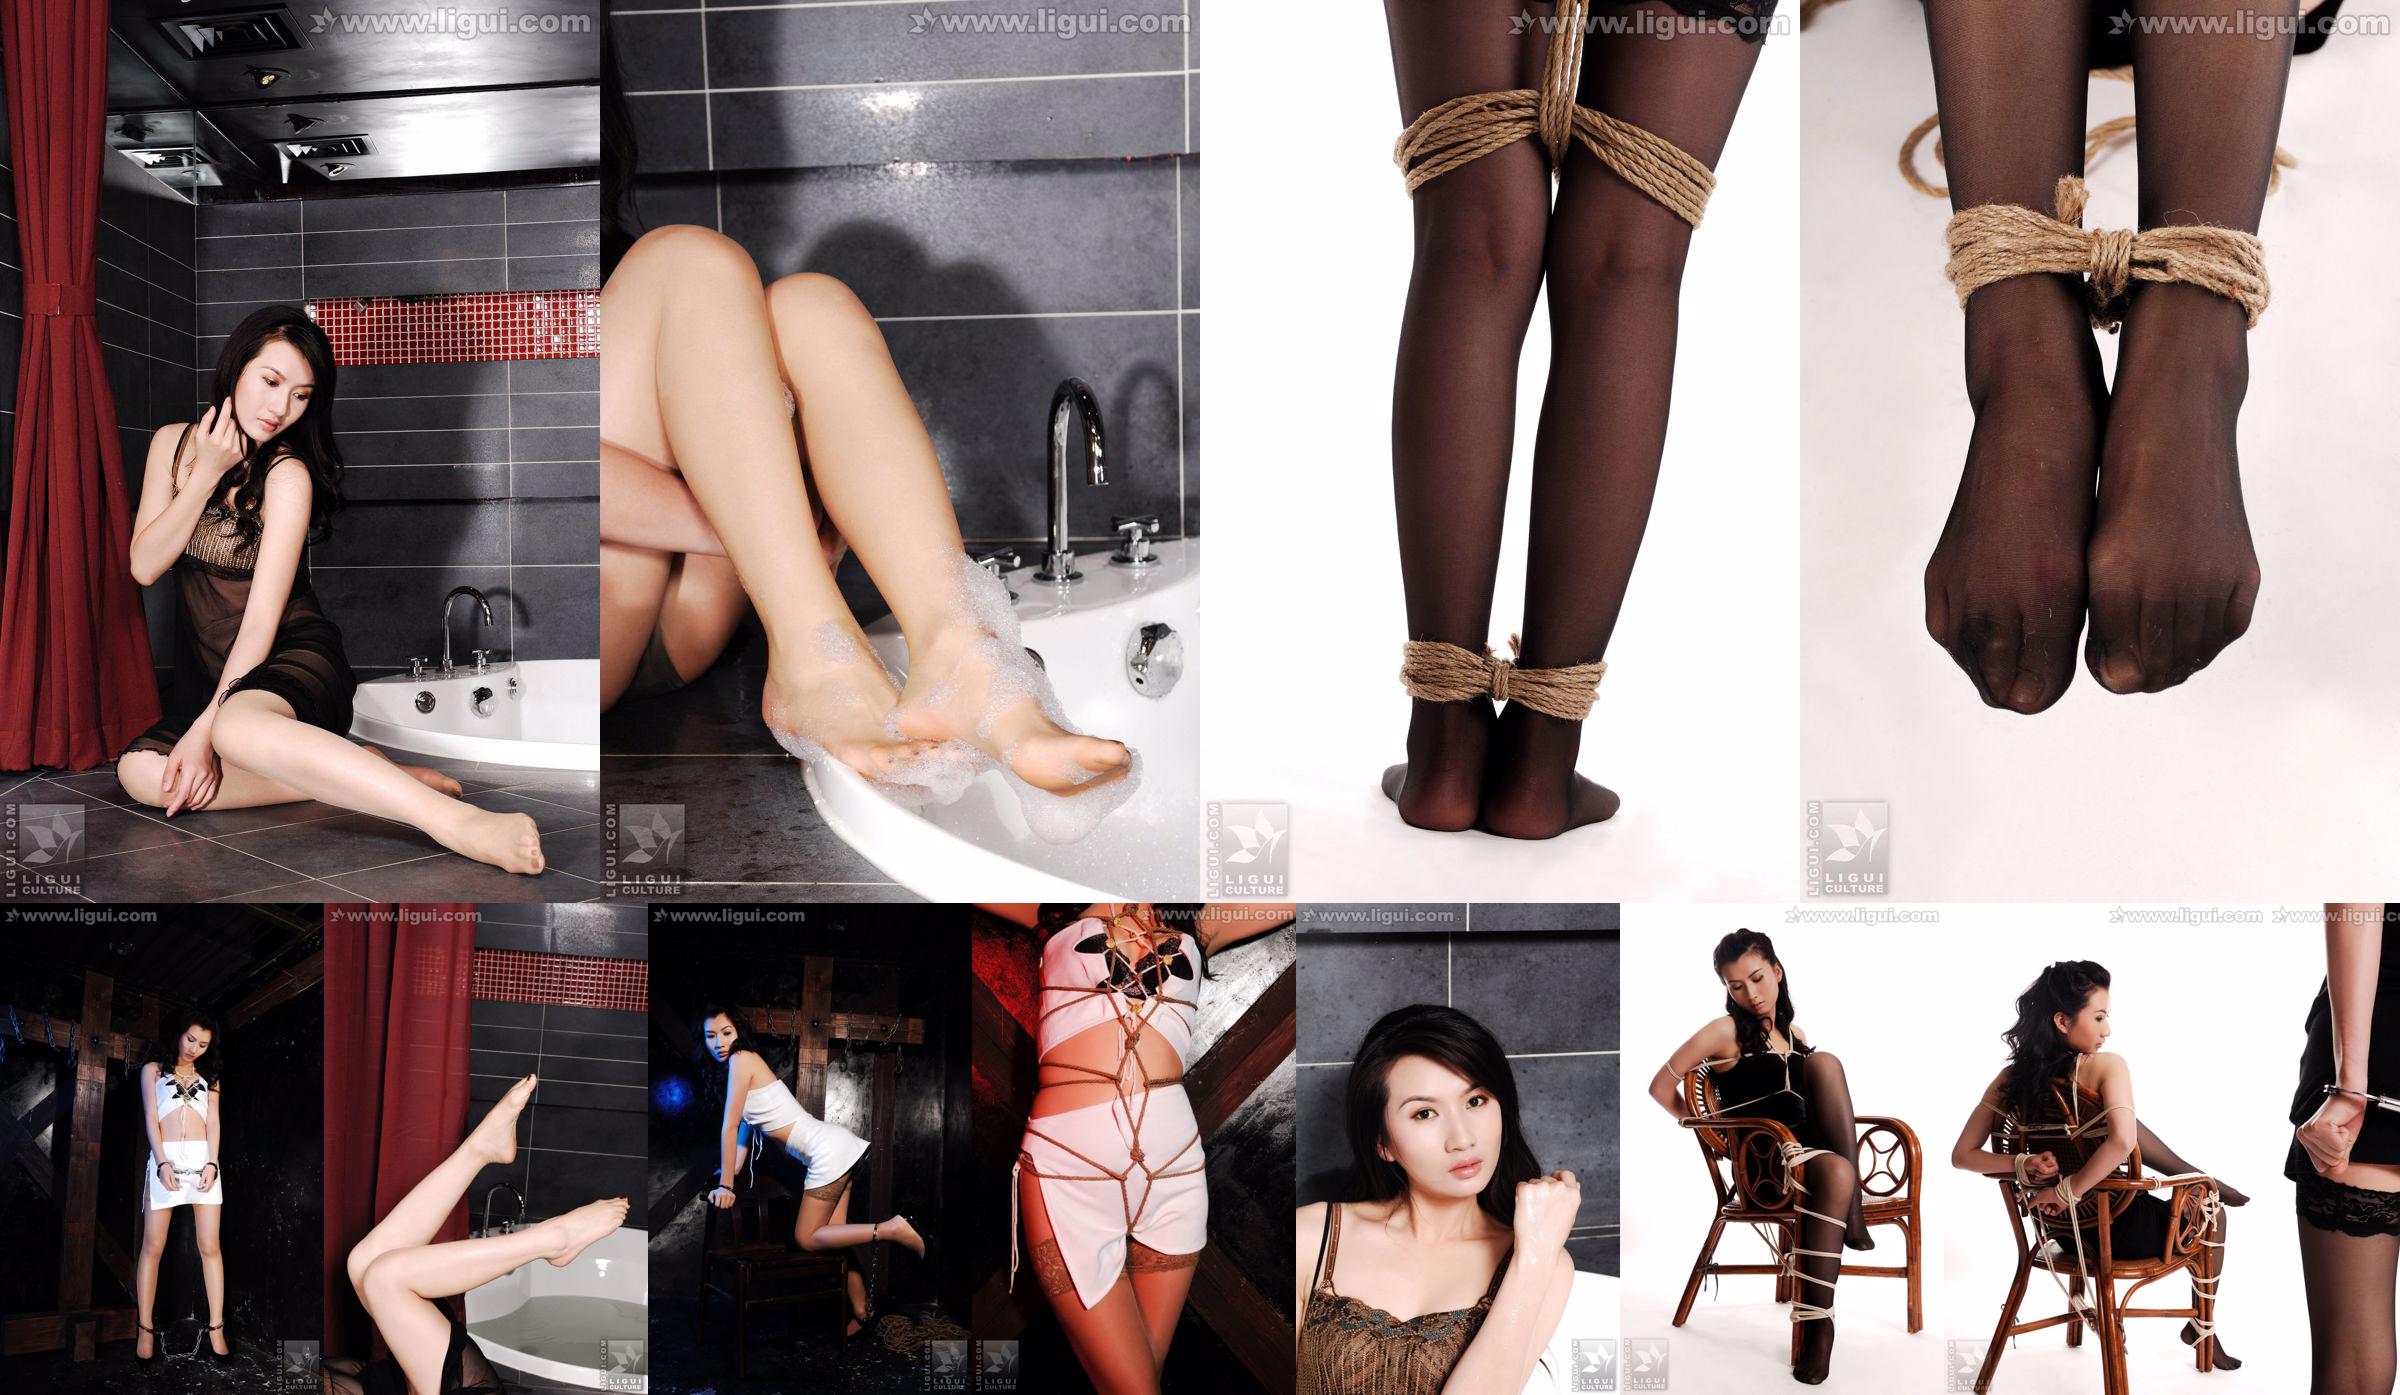 Модель Юли "Женская подпольная вечеринка, заключенная в тюрьму" [Mitsuka 丽 柜 LiGui] Silk Foot Photo Picture No.9a3068 Страница 4